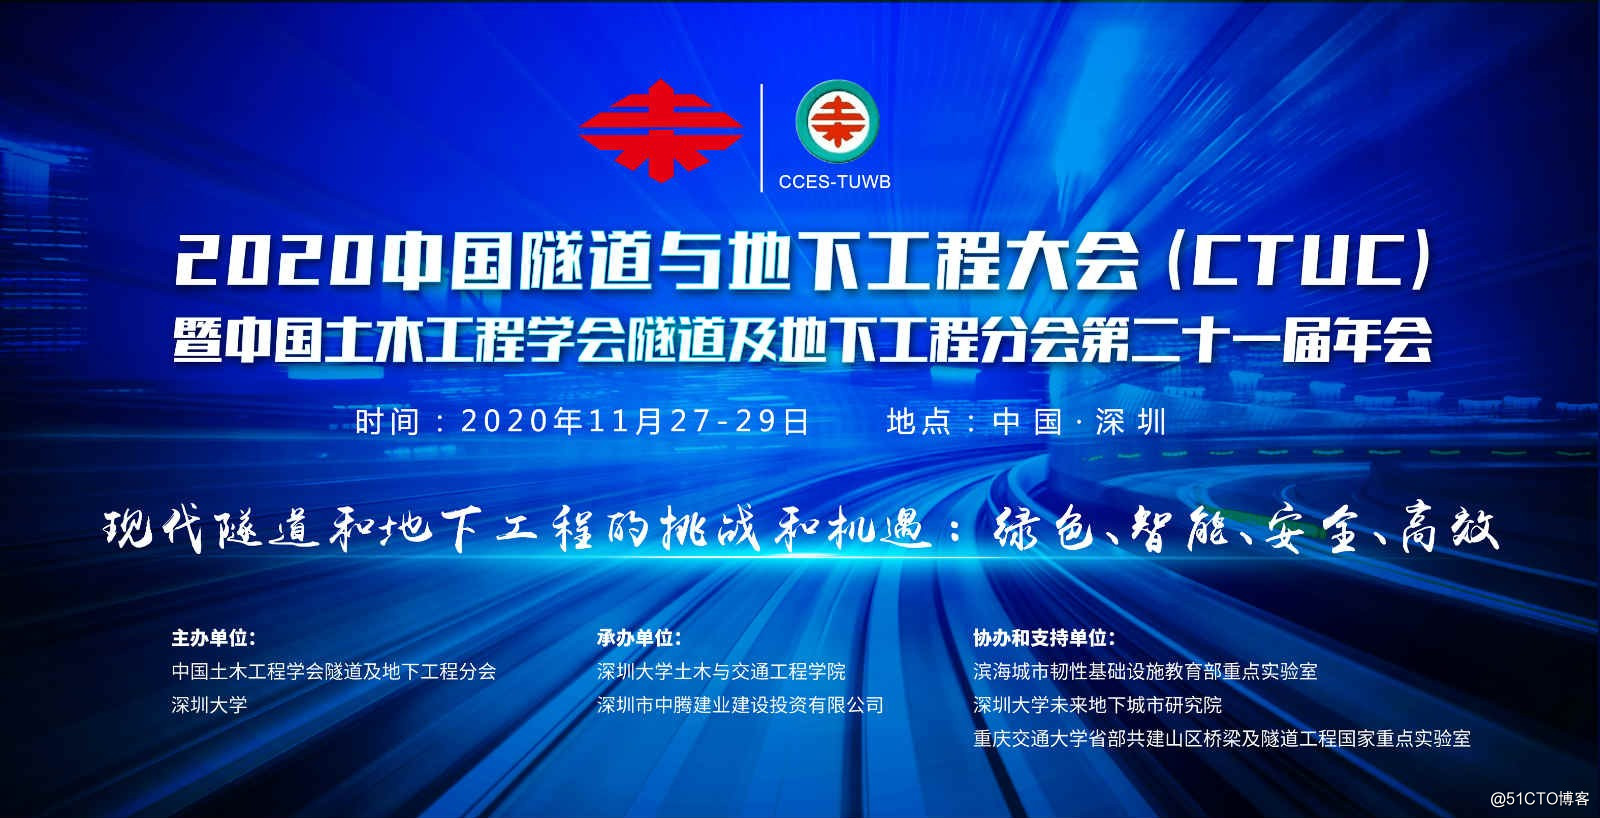 Conferencia de ingeniería subterránea y de túneles de China (CTUC) de 2020 y 21a reunión anual de la rama de ingeniería subterránea y de túneles de la Sociedad de Ingeniería Civil China